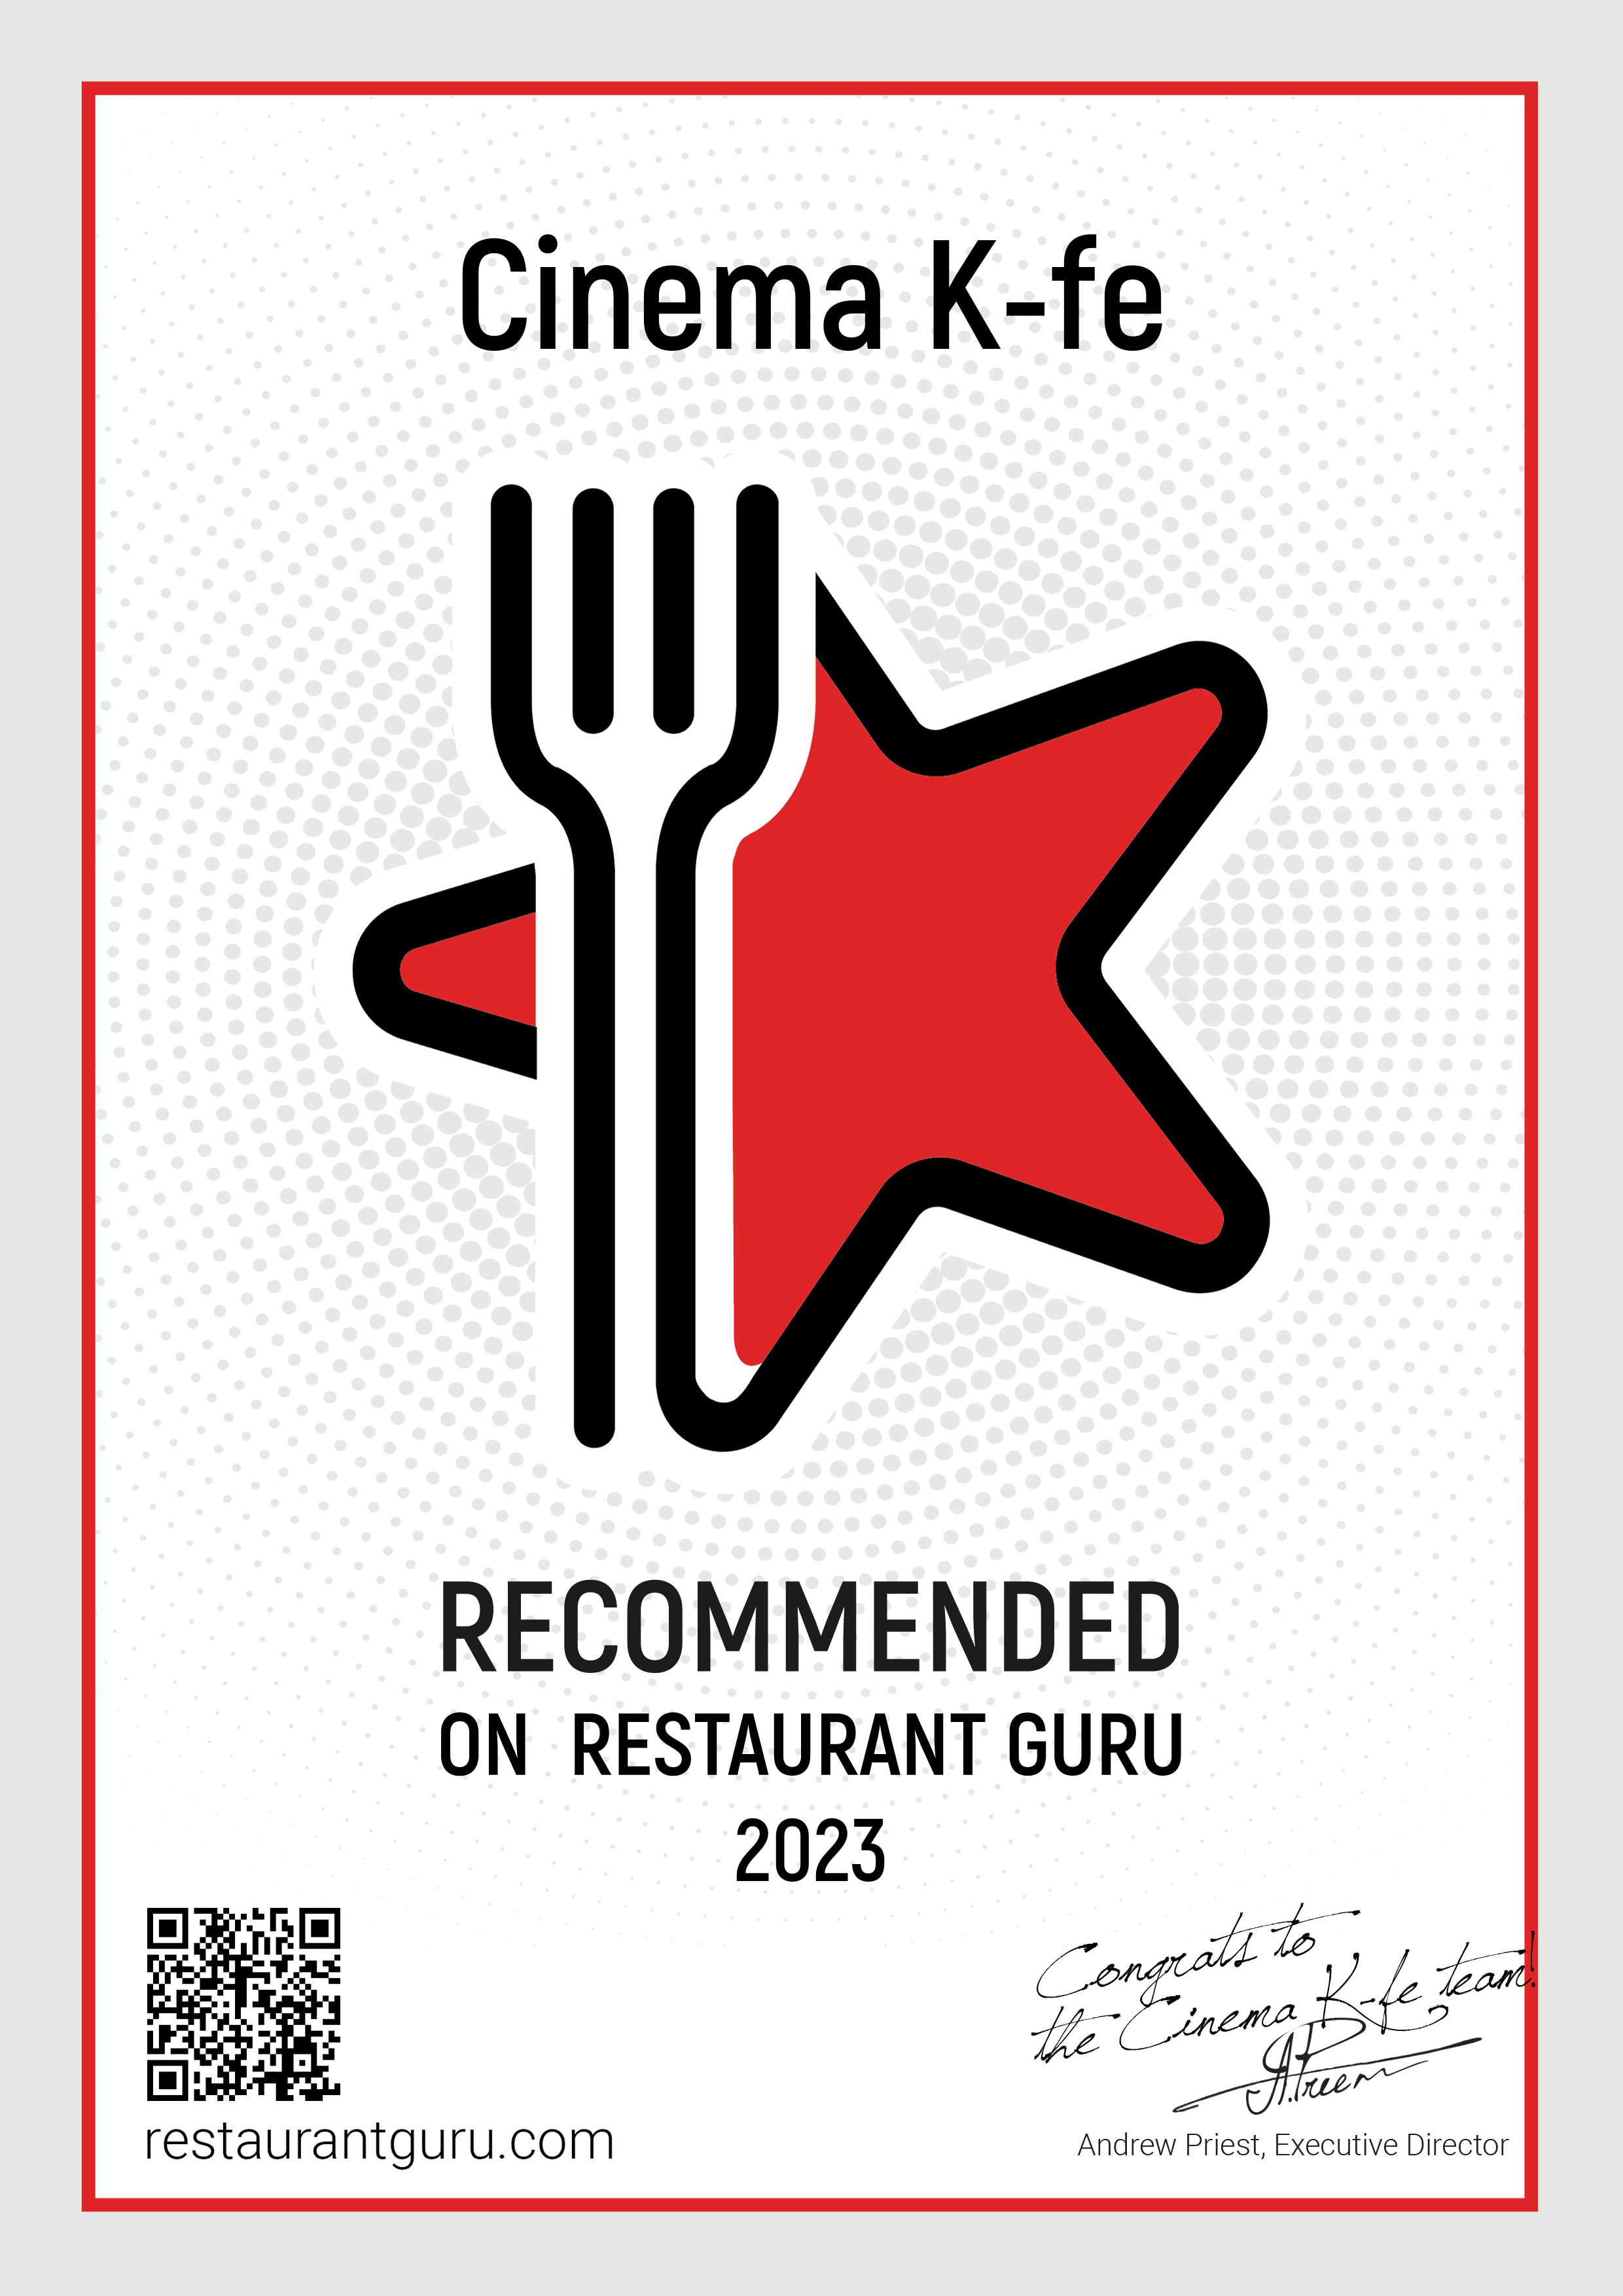 Restaurant Guru Recommended